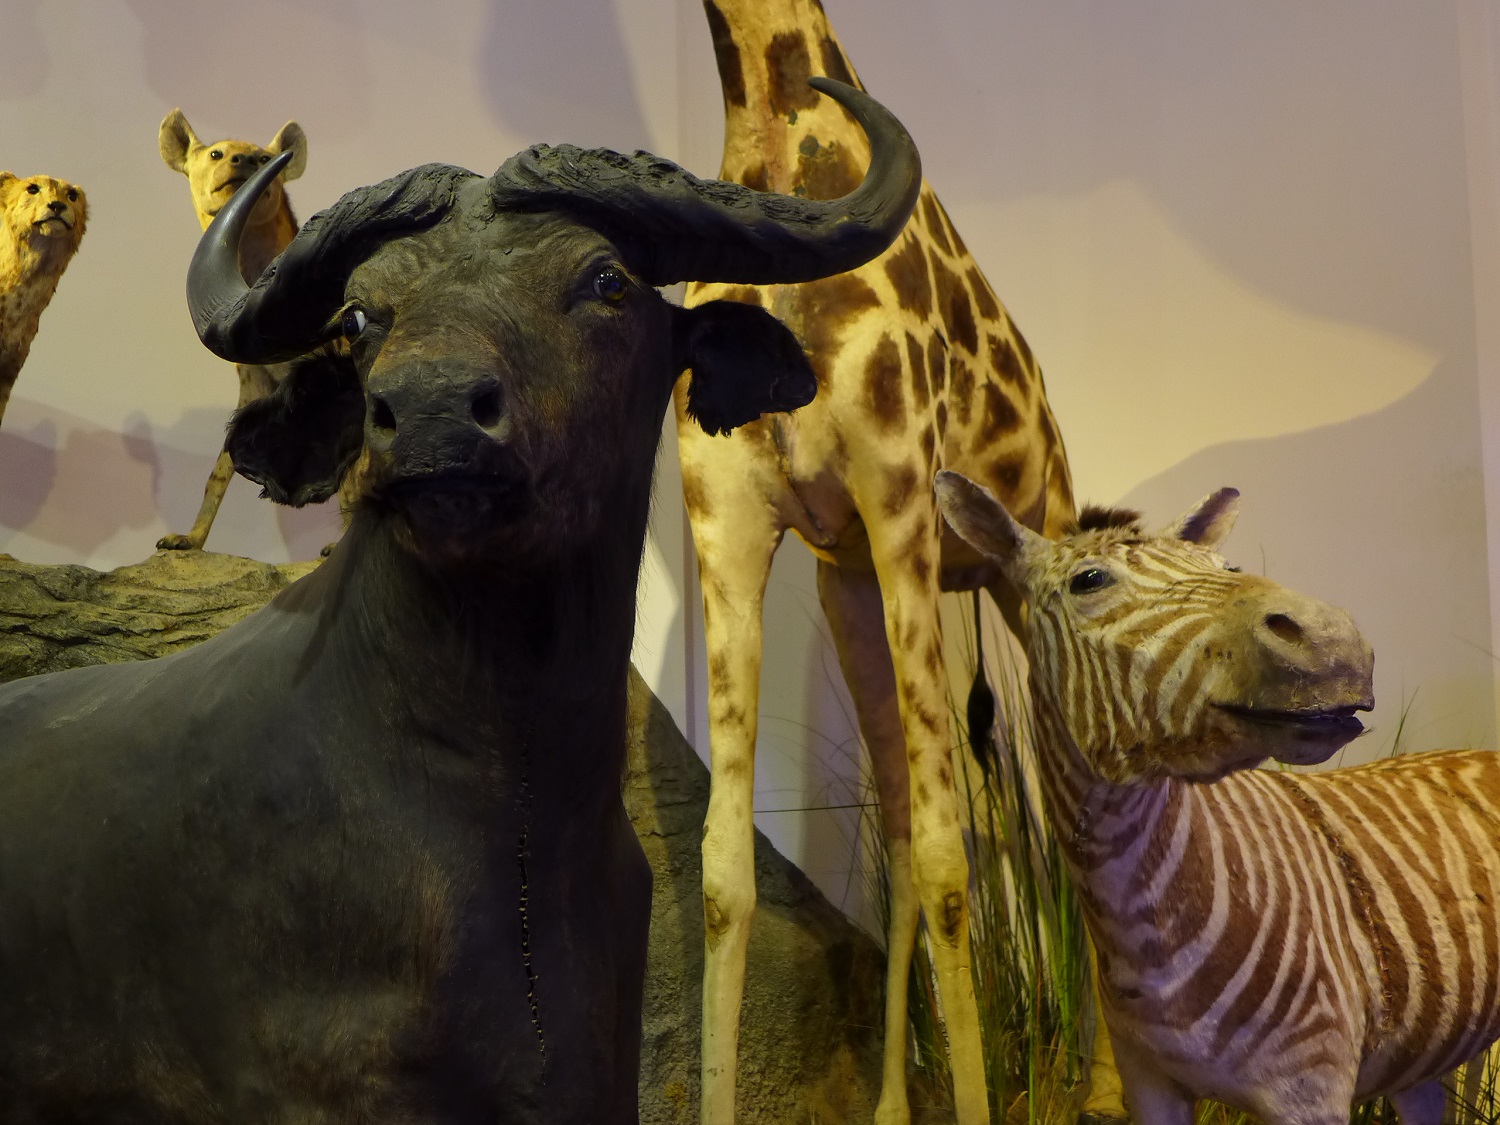 Le muséum a aussi une section sur la faune du monde, avec des animaux de tous les continents. Ici, la savane africaine.